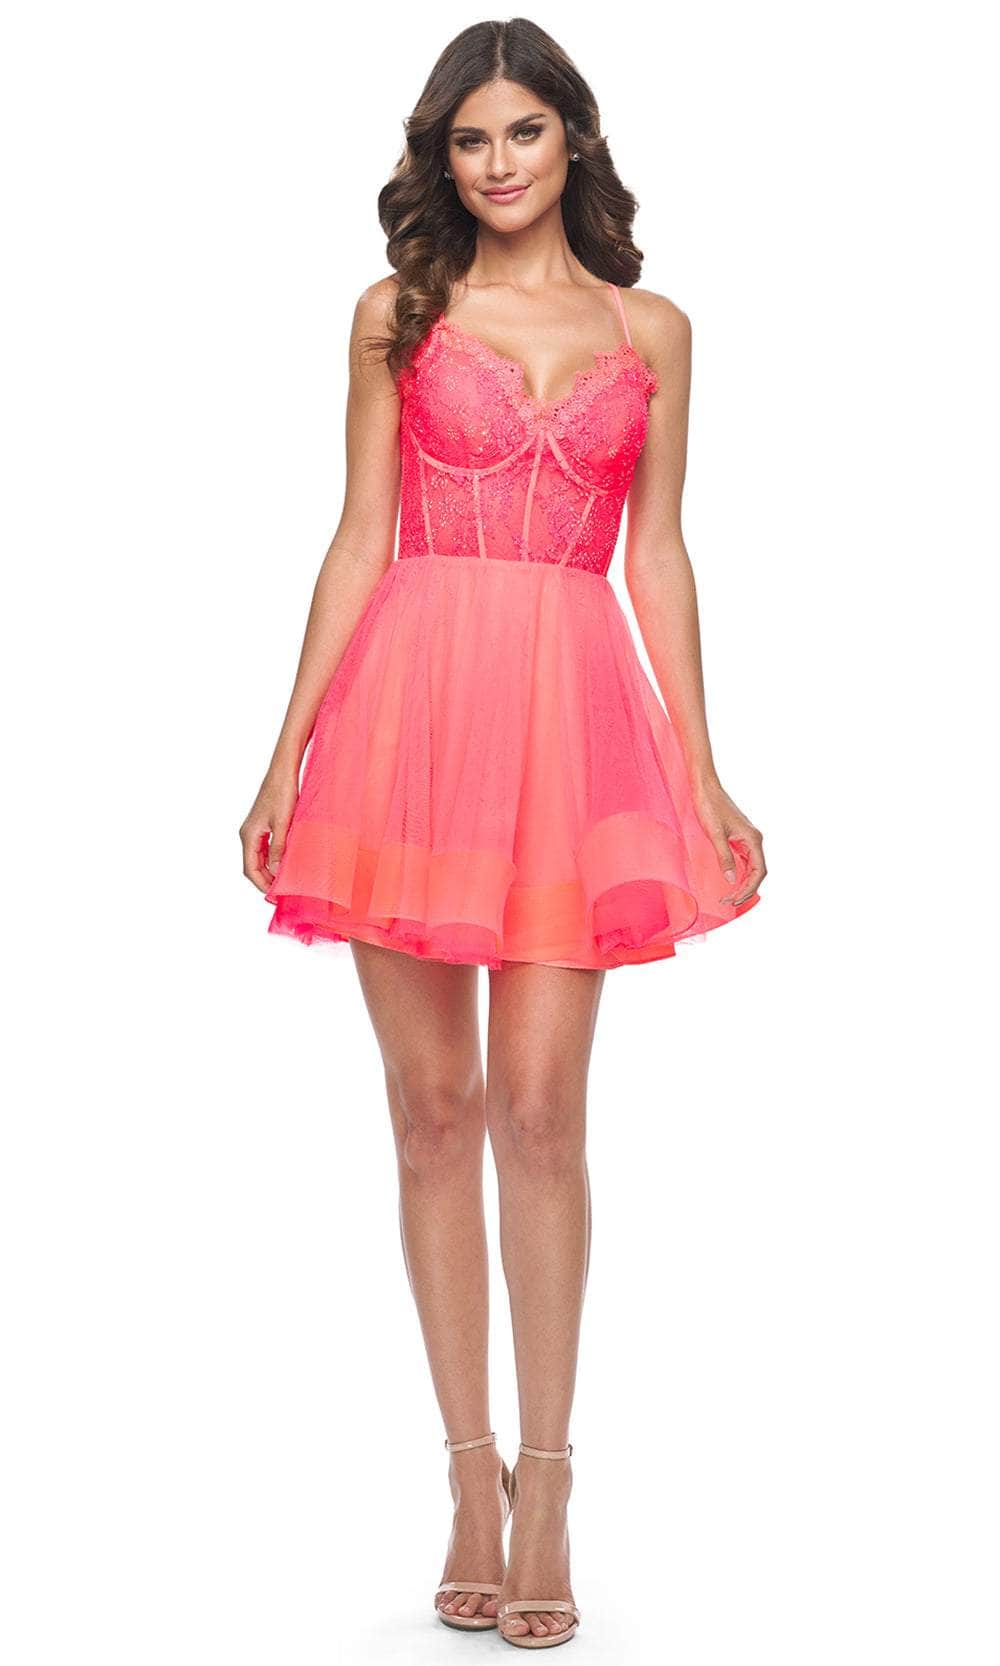 La Femme 31469 - Lace Appliqued Dress 00 / Hot Coral